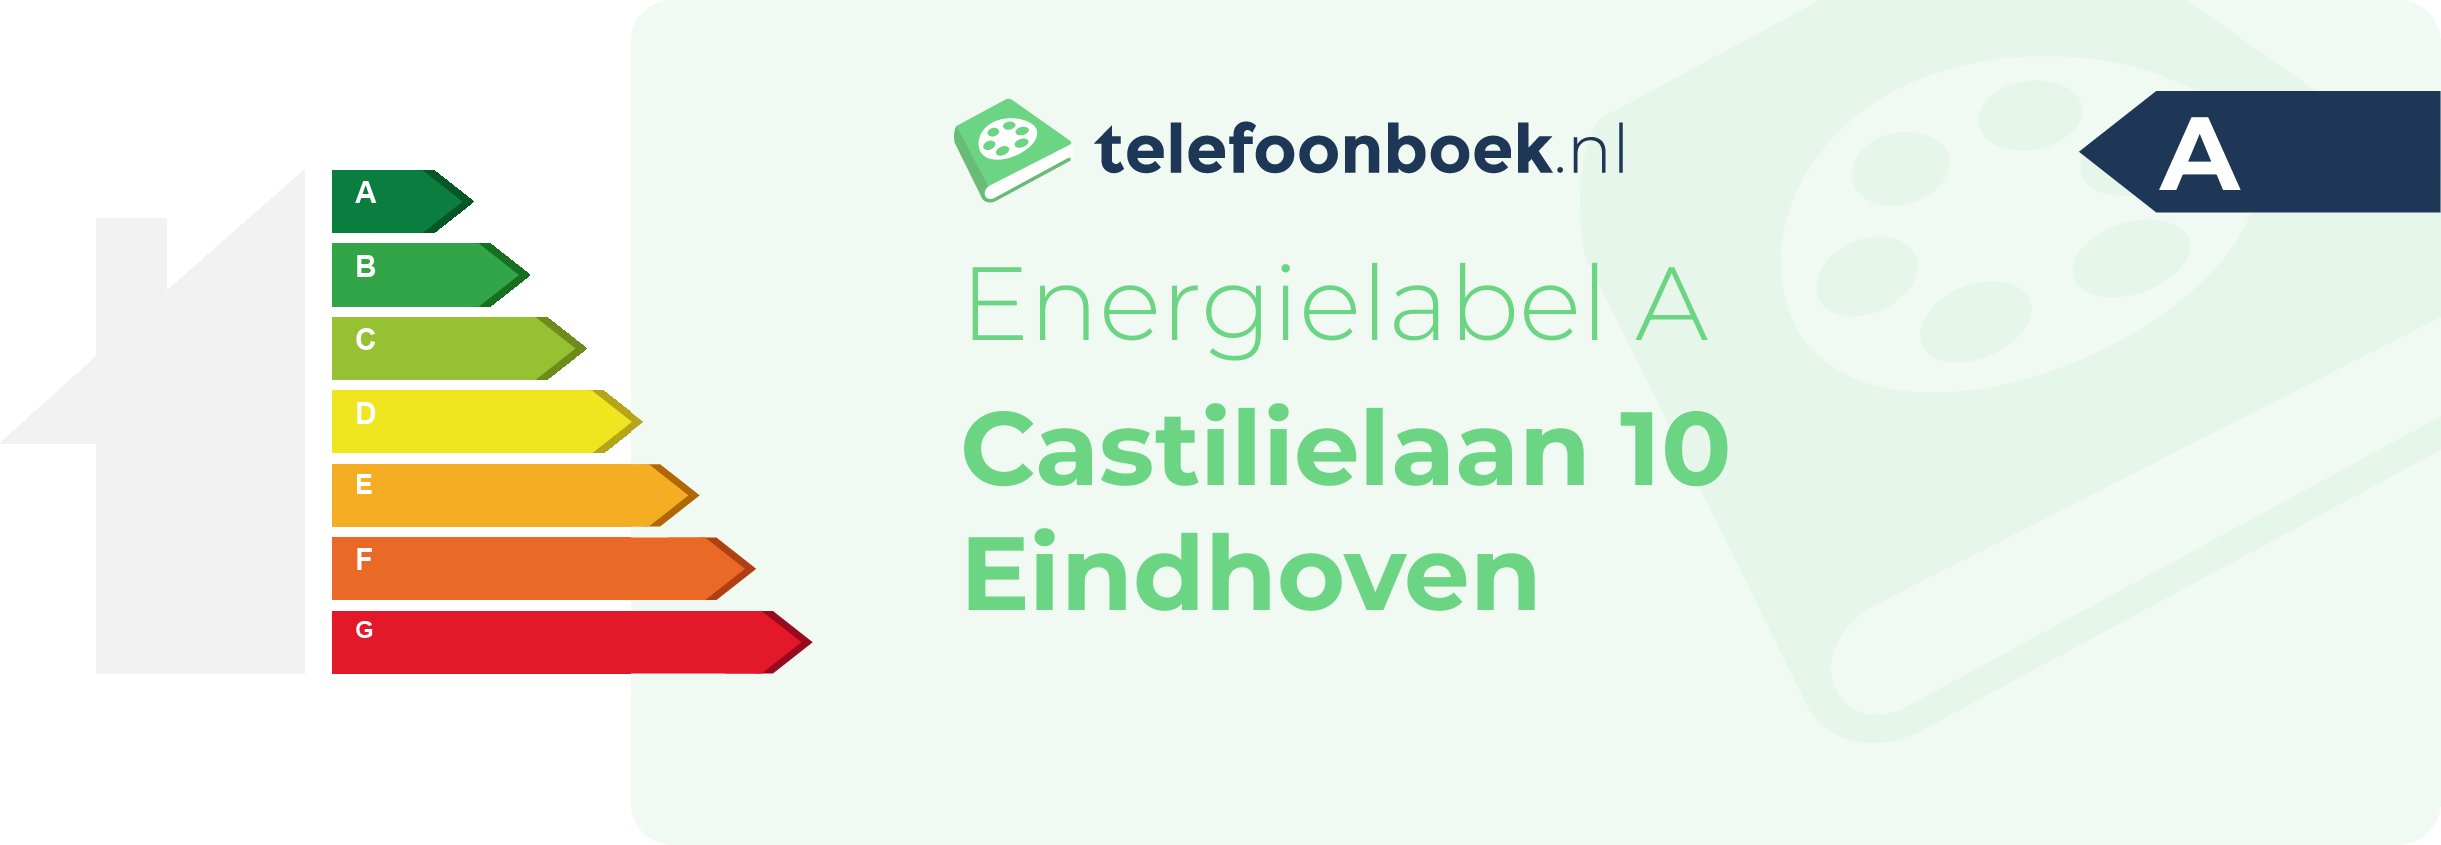 Energielabel Castilielaan 10 Eindhoven